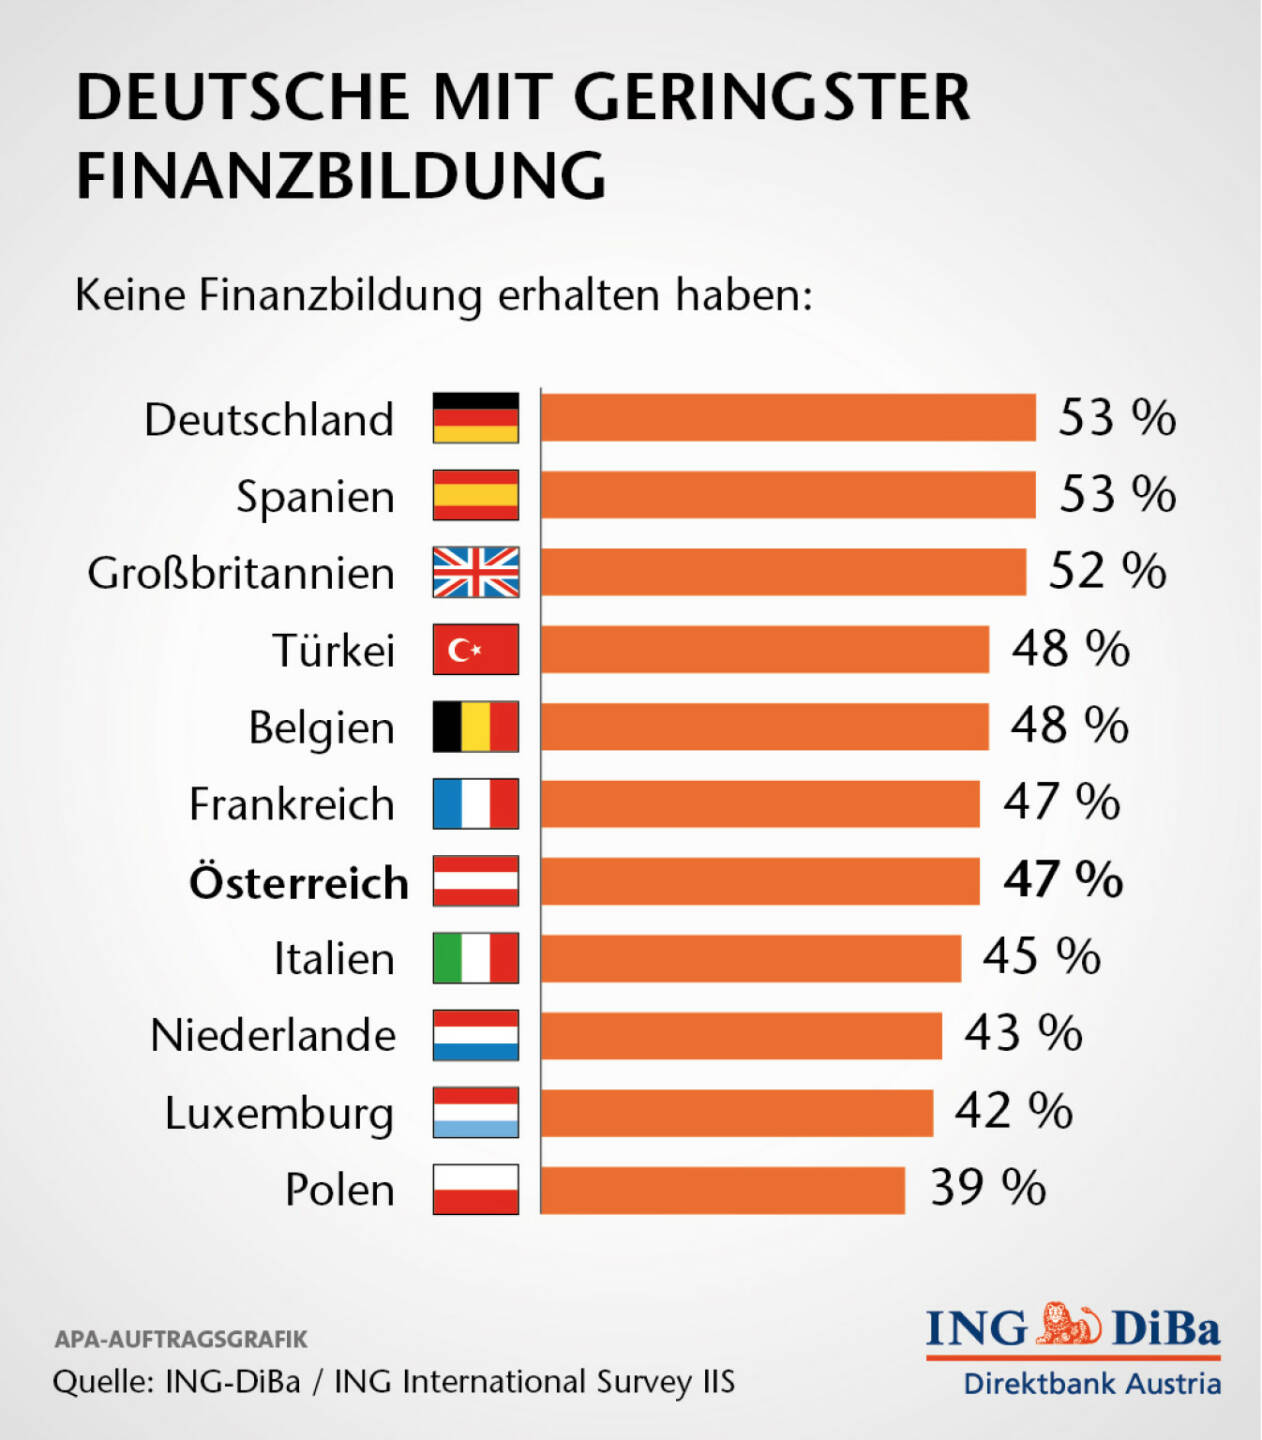 Deutsche mit geringster Finanzbildung: Das Ergebnis länderweise betrachtend ist bemerkenswert, dass gerade in Deutschland die meisten Menschen (53%) angaben, keine Finanzbildung zu haben. In Österreich waren es 47%. (ING-DiBa)
